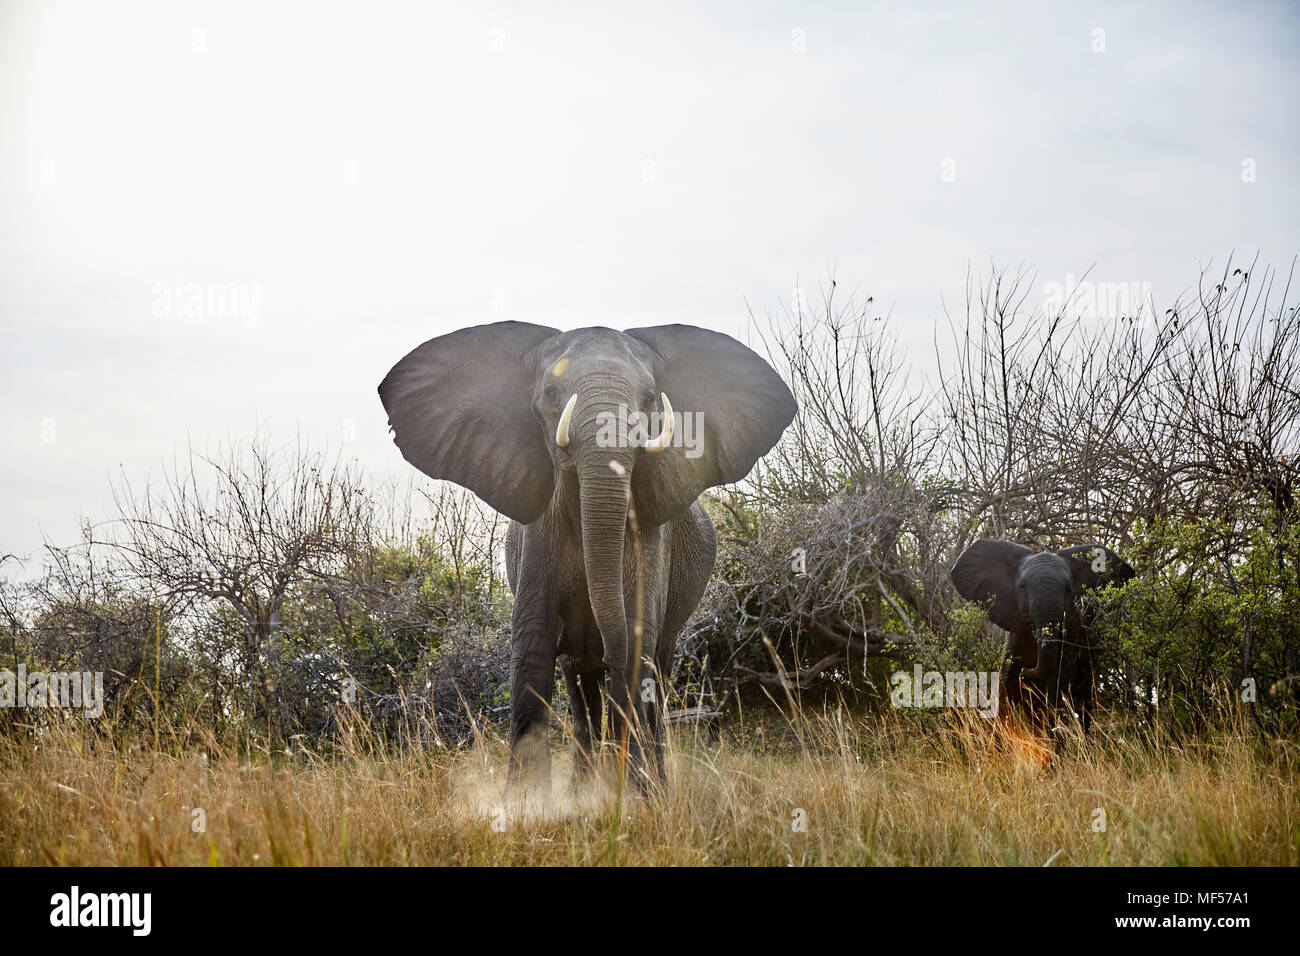 Namibia, Caprivi, vaca elefante en actitud defensiva, el animal joven en el fondo Foto de stock